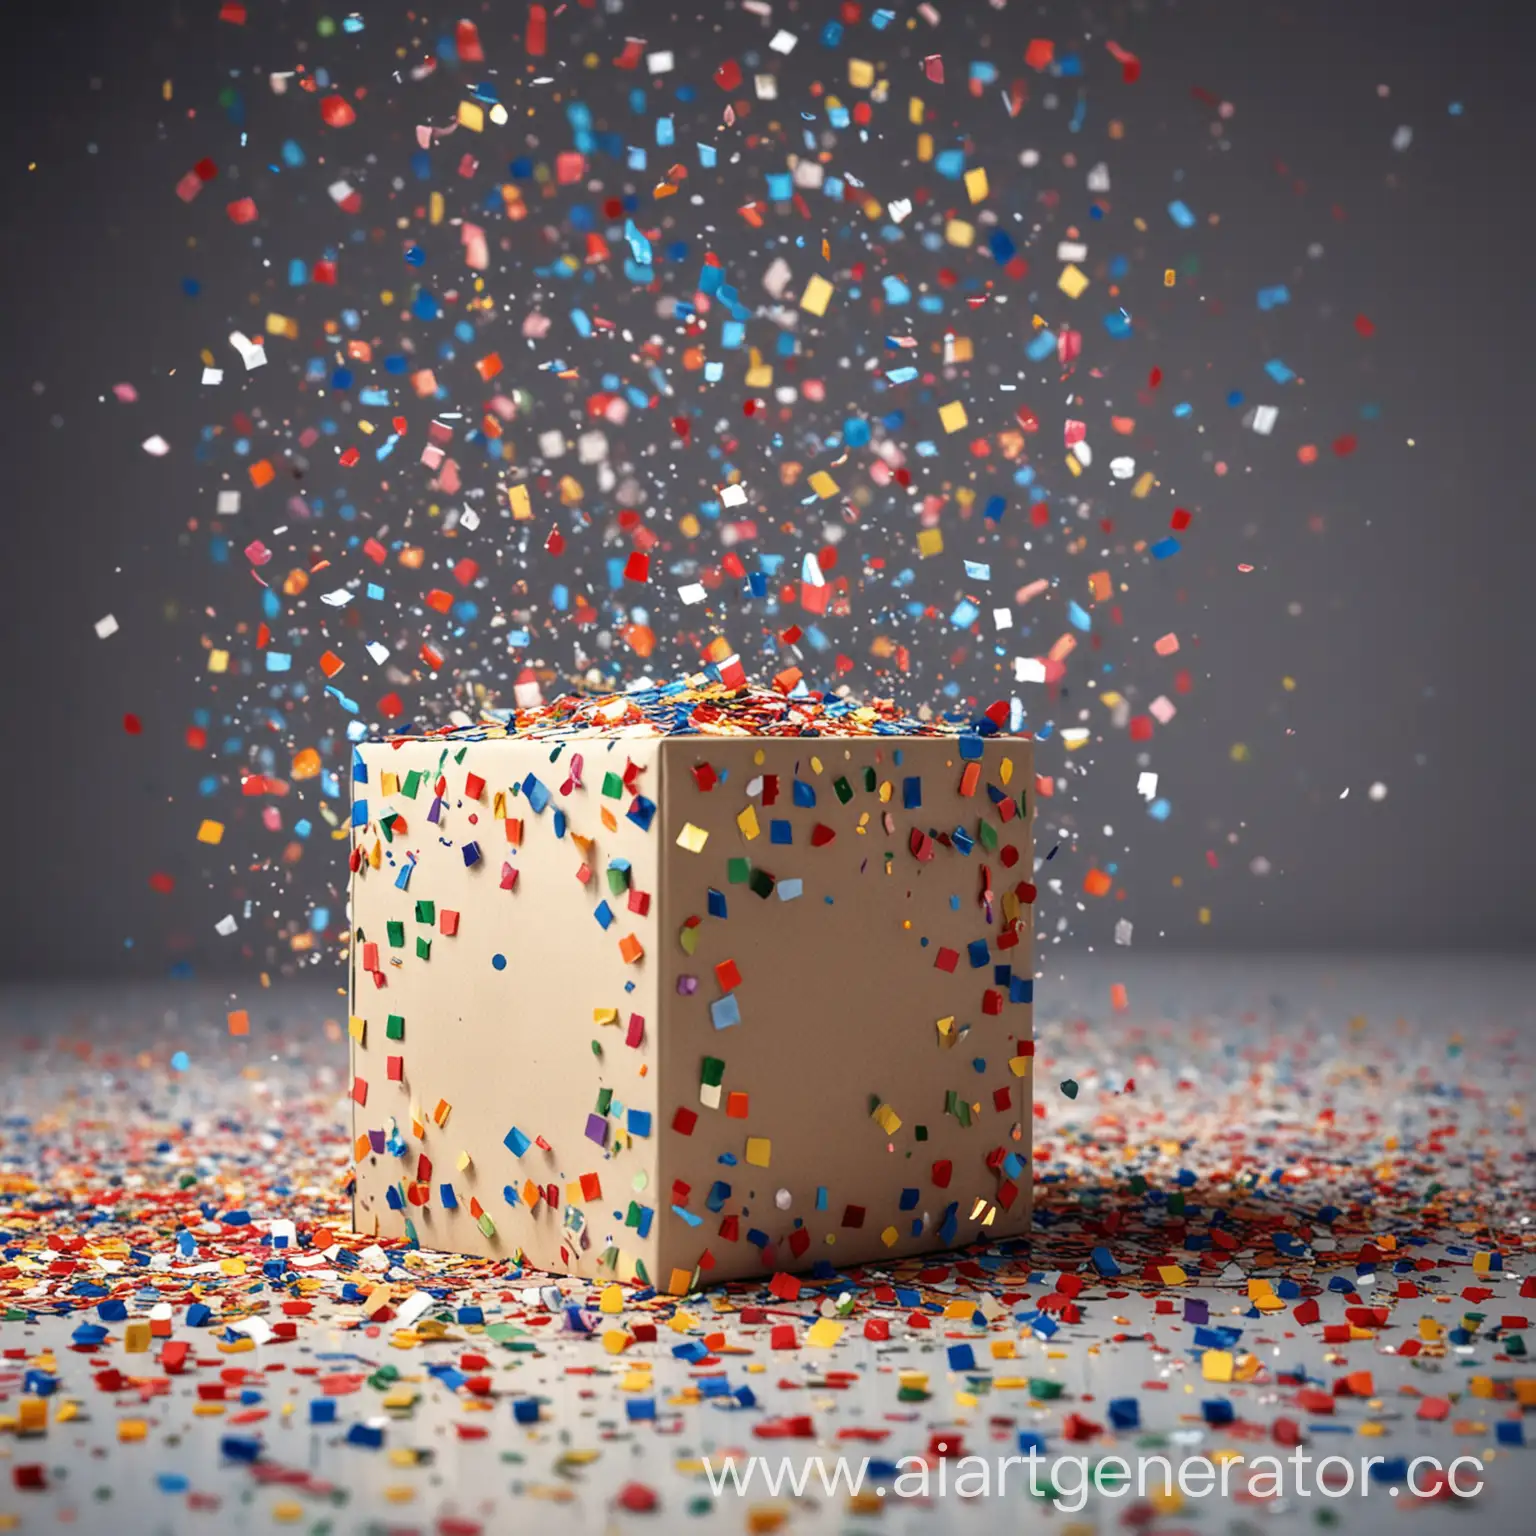 Colorful-Celebration-Cube-Amid-Confetti-Shower